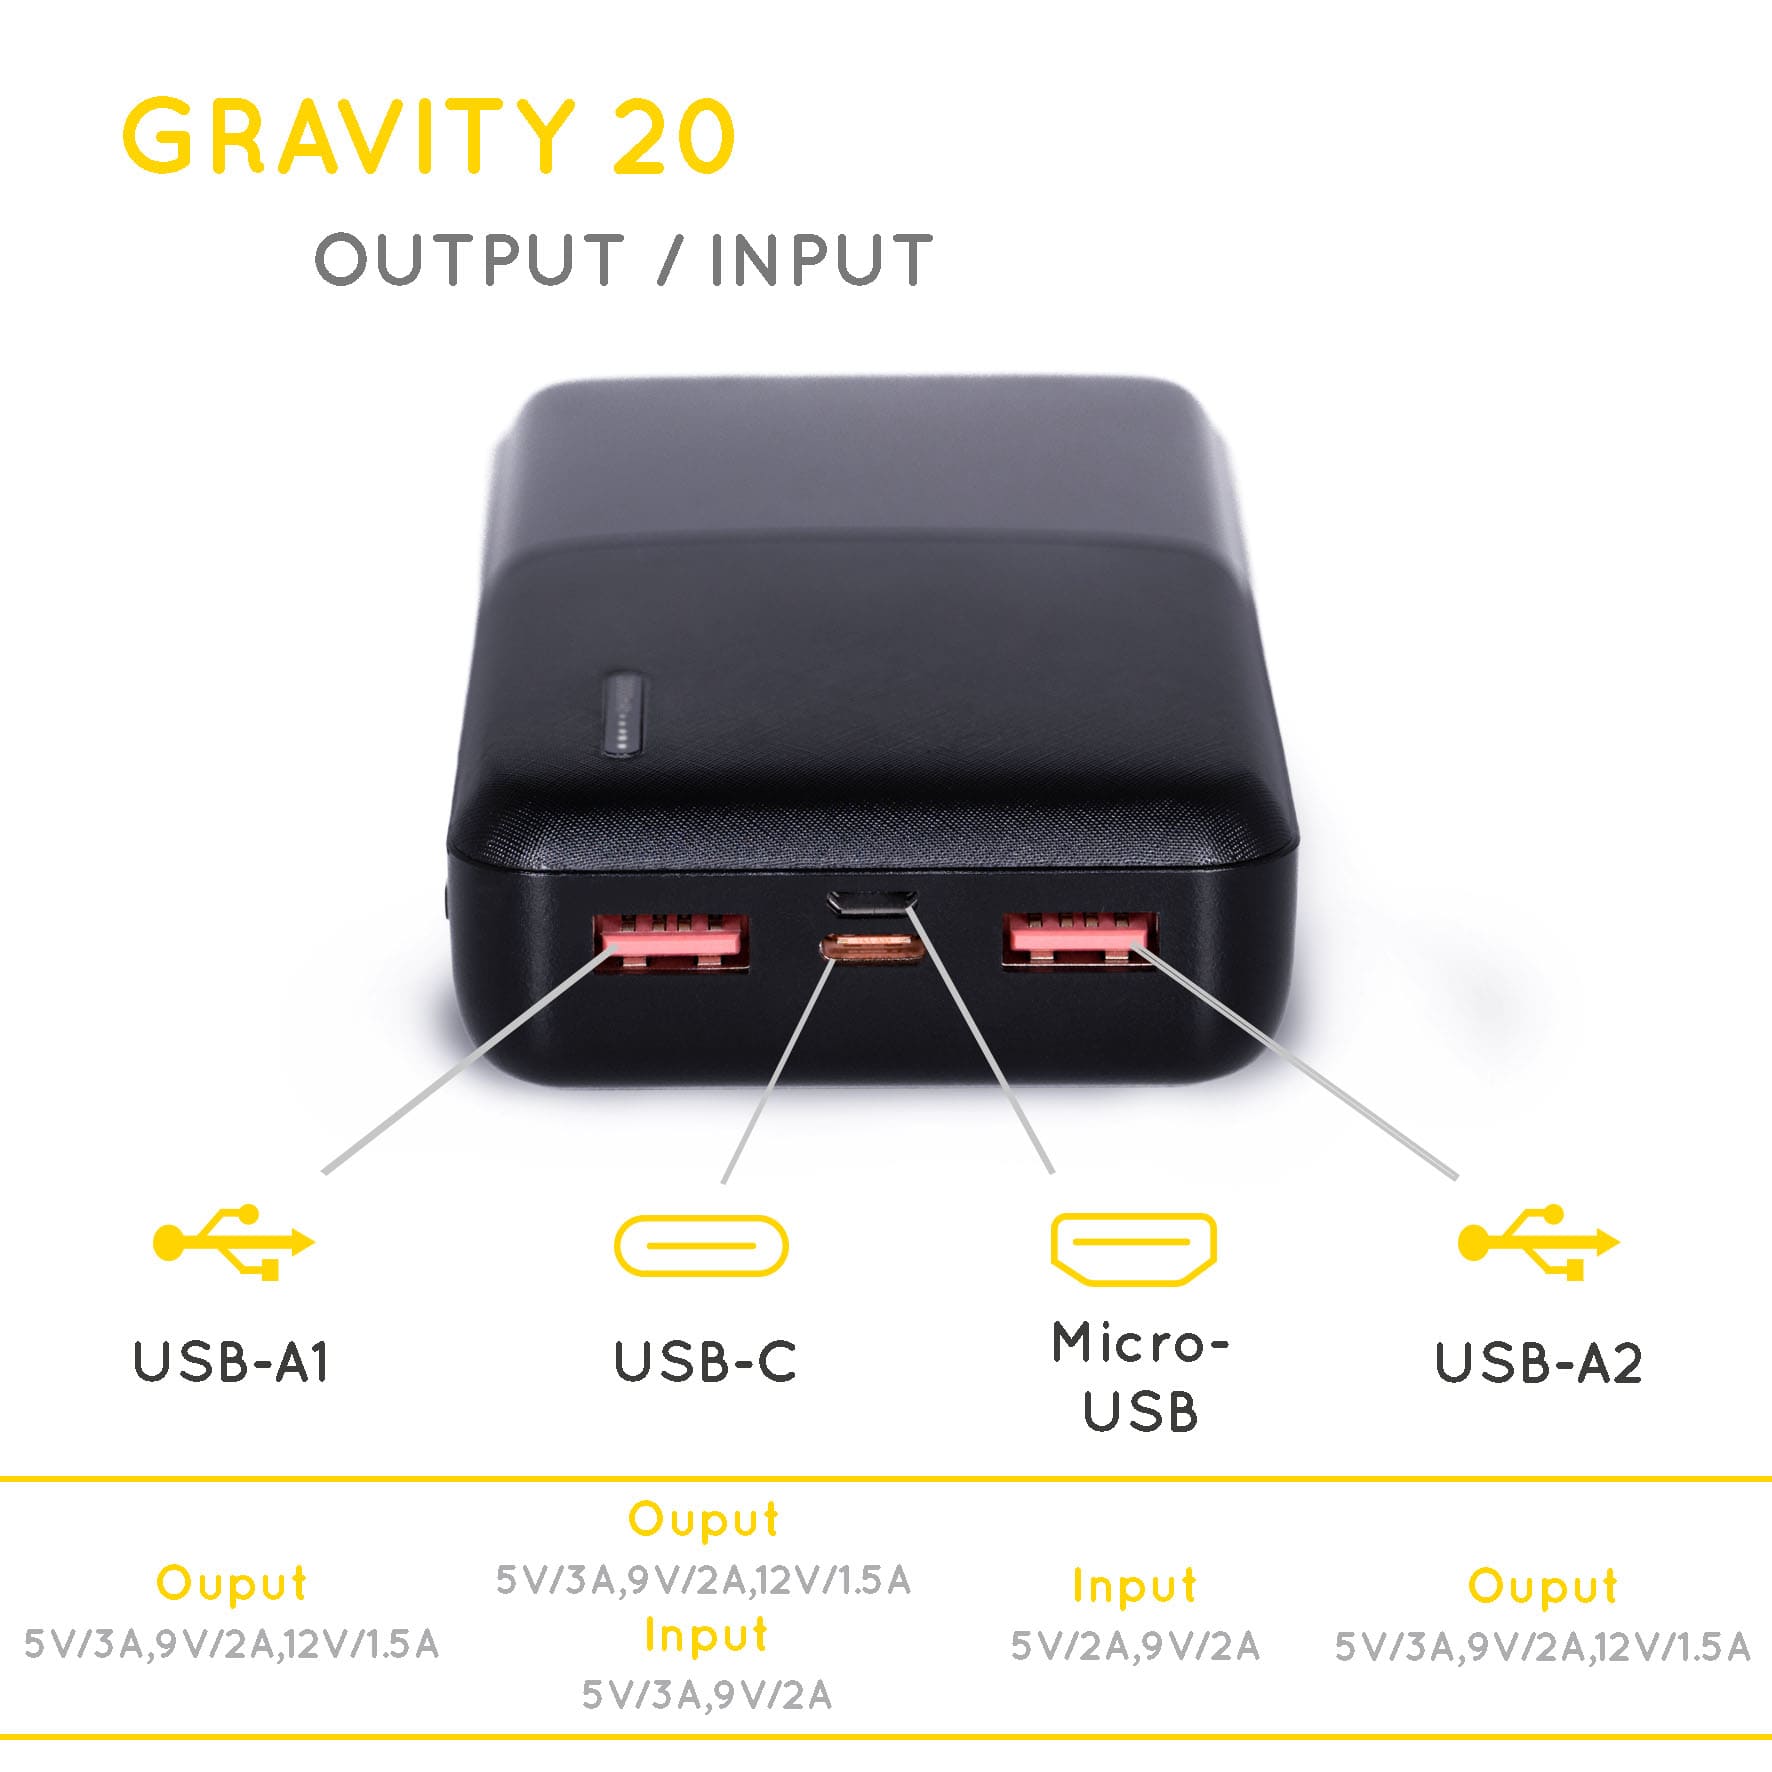 Foto vergrößert auf den USB-Anschluss eines kompakten Gravity20 powerbank mit dessen Spezifikationen